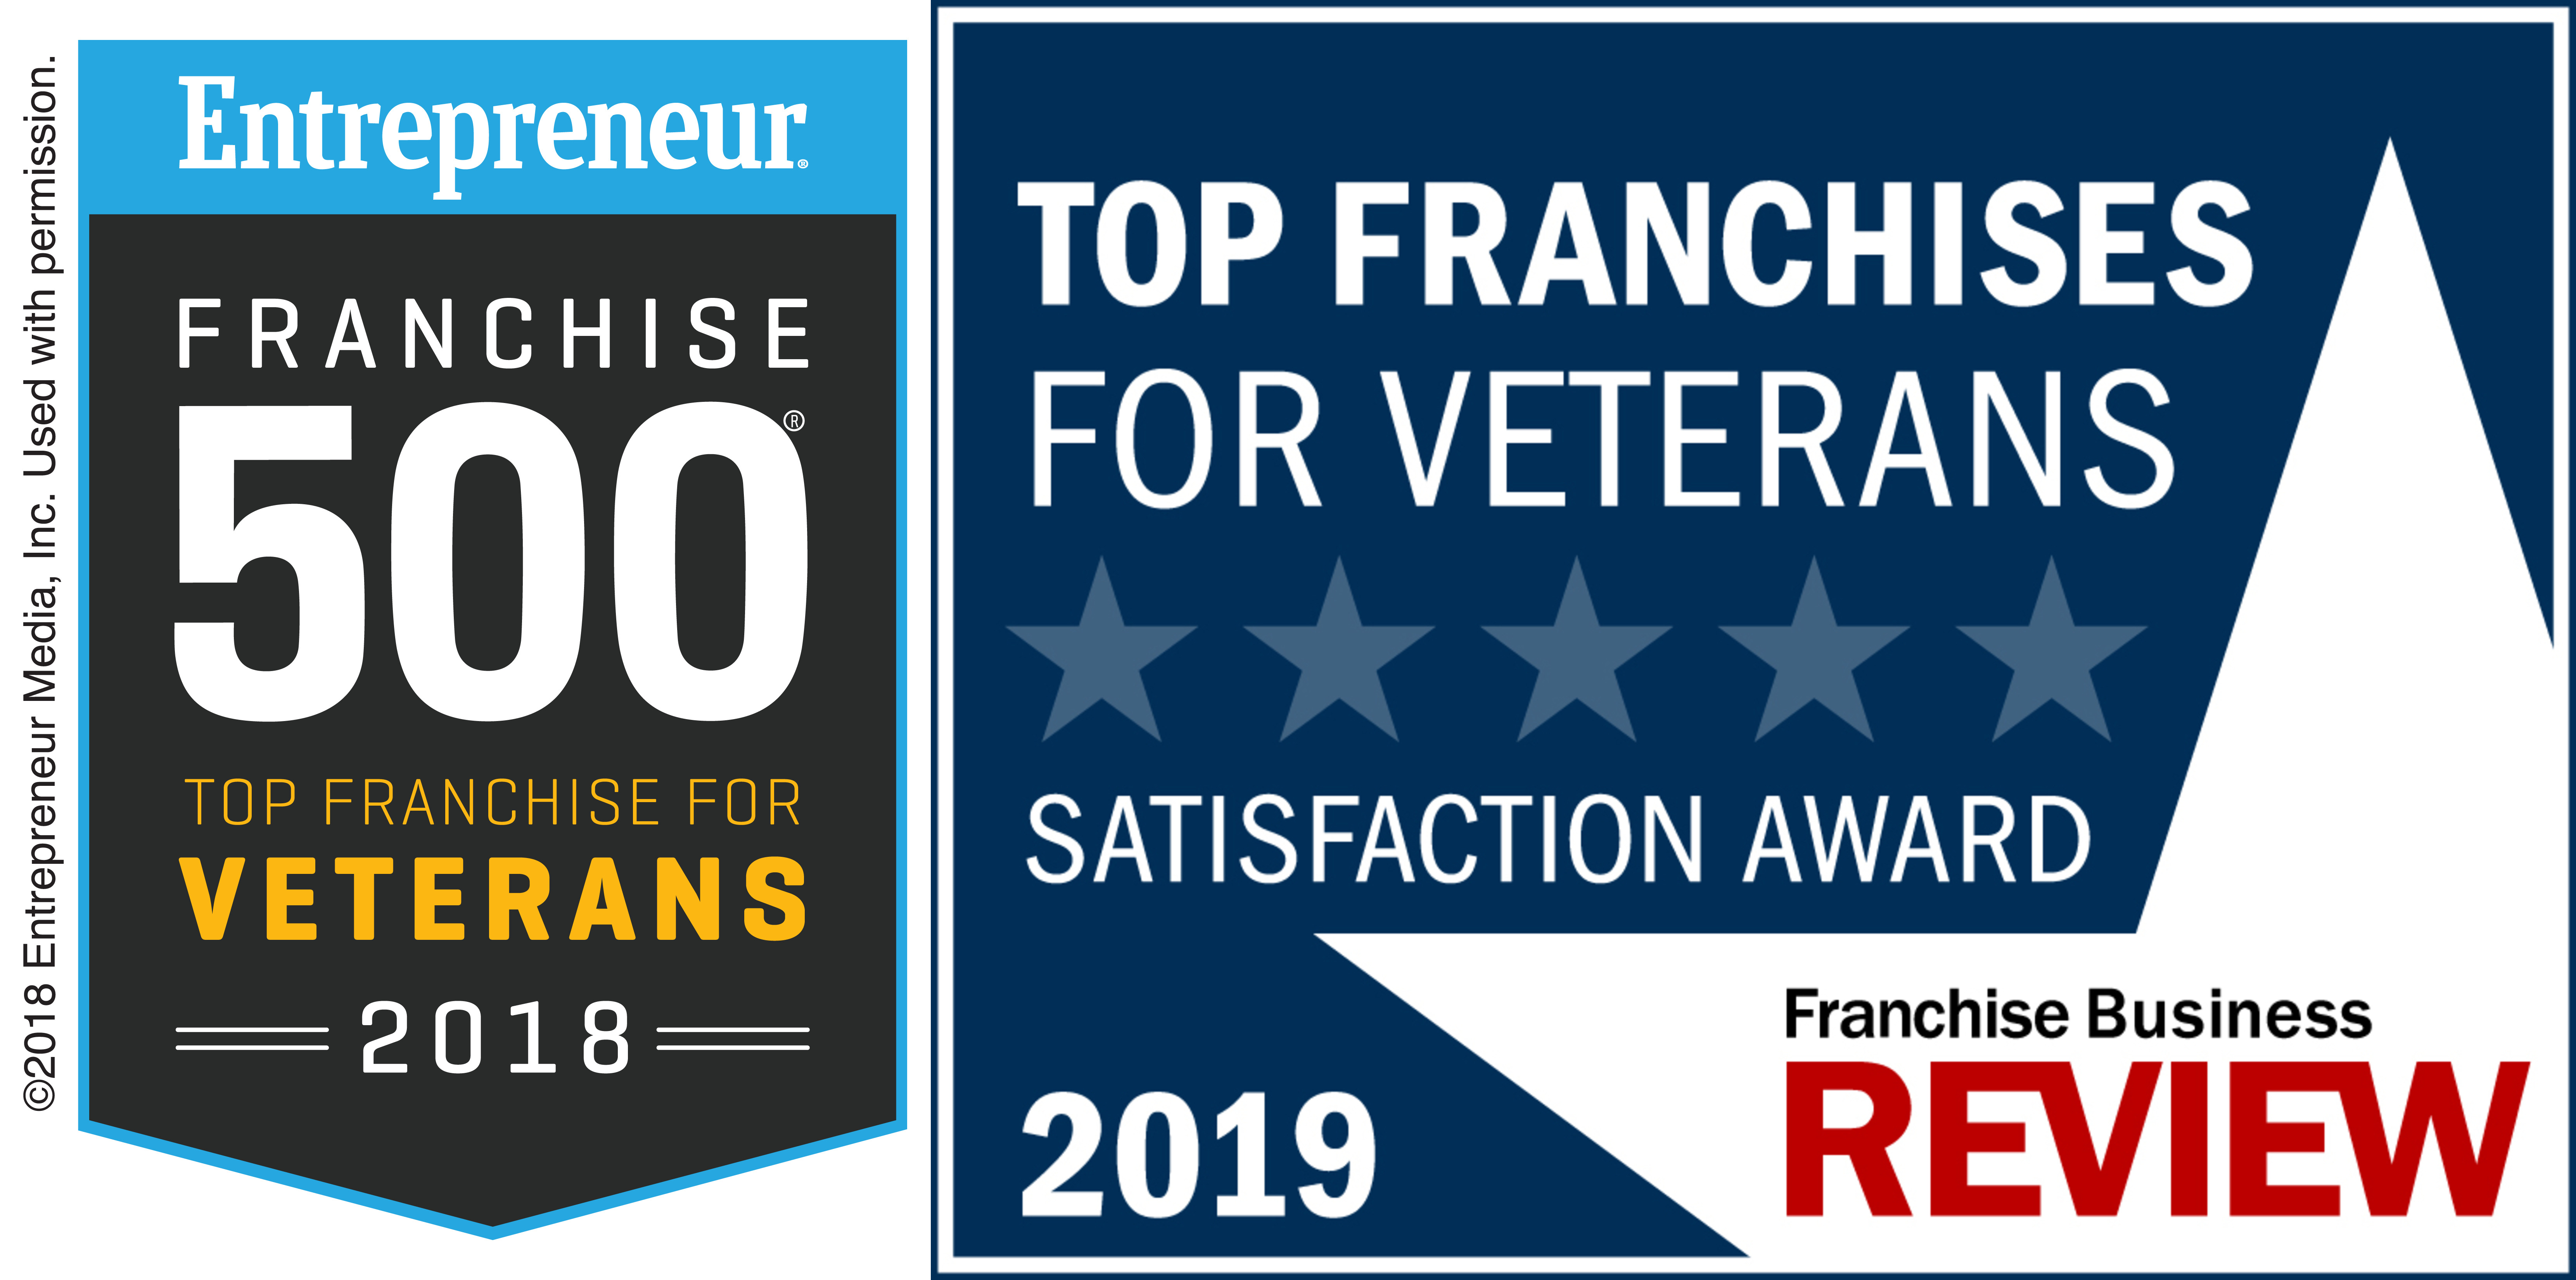 Entrepreneur Top Franchises for Veterans logo